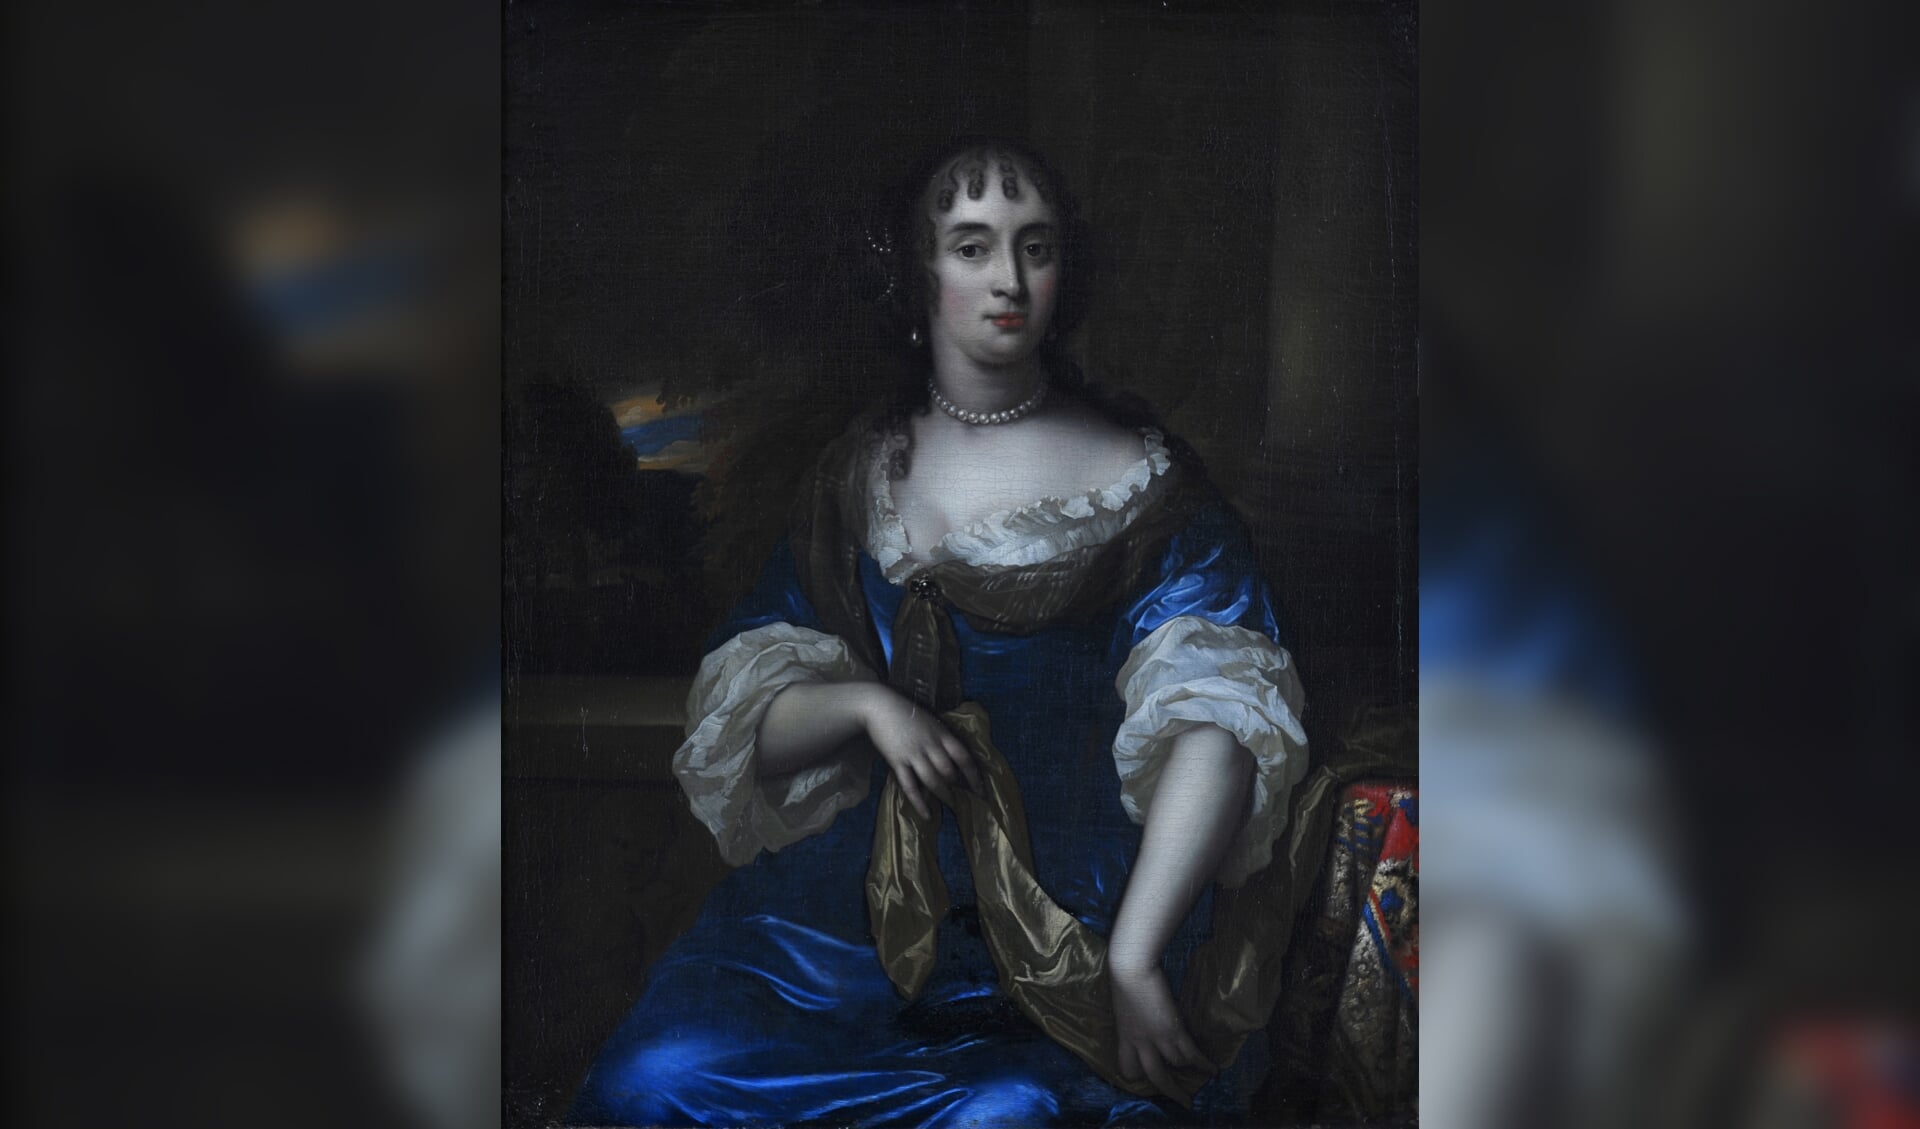 Jan de Baen, Portret van Maria van Berckel, 1670 18059 a,b, olieverf op doek. Dordrecht, Huis Van Gijn